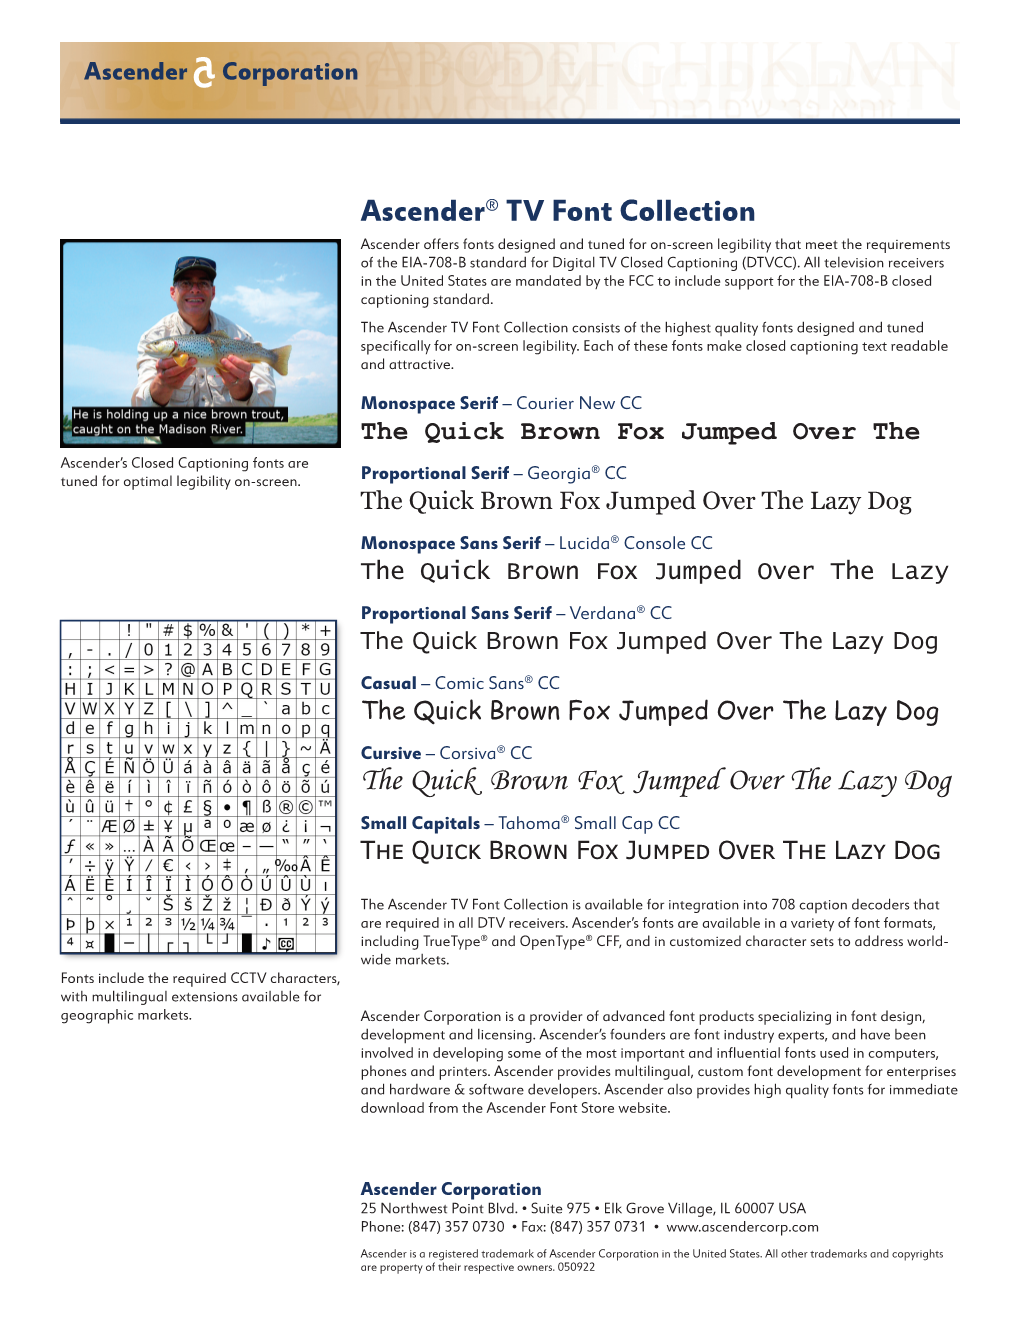 Ascender TV Fonts Brochure 050922.Indd